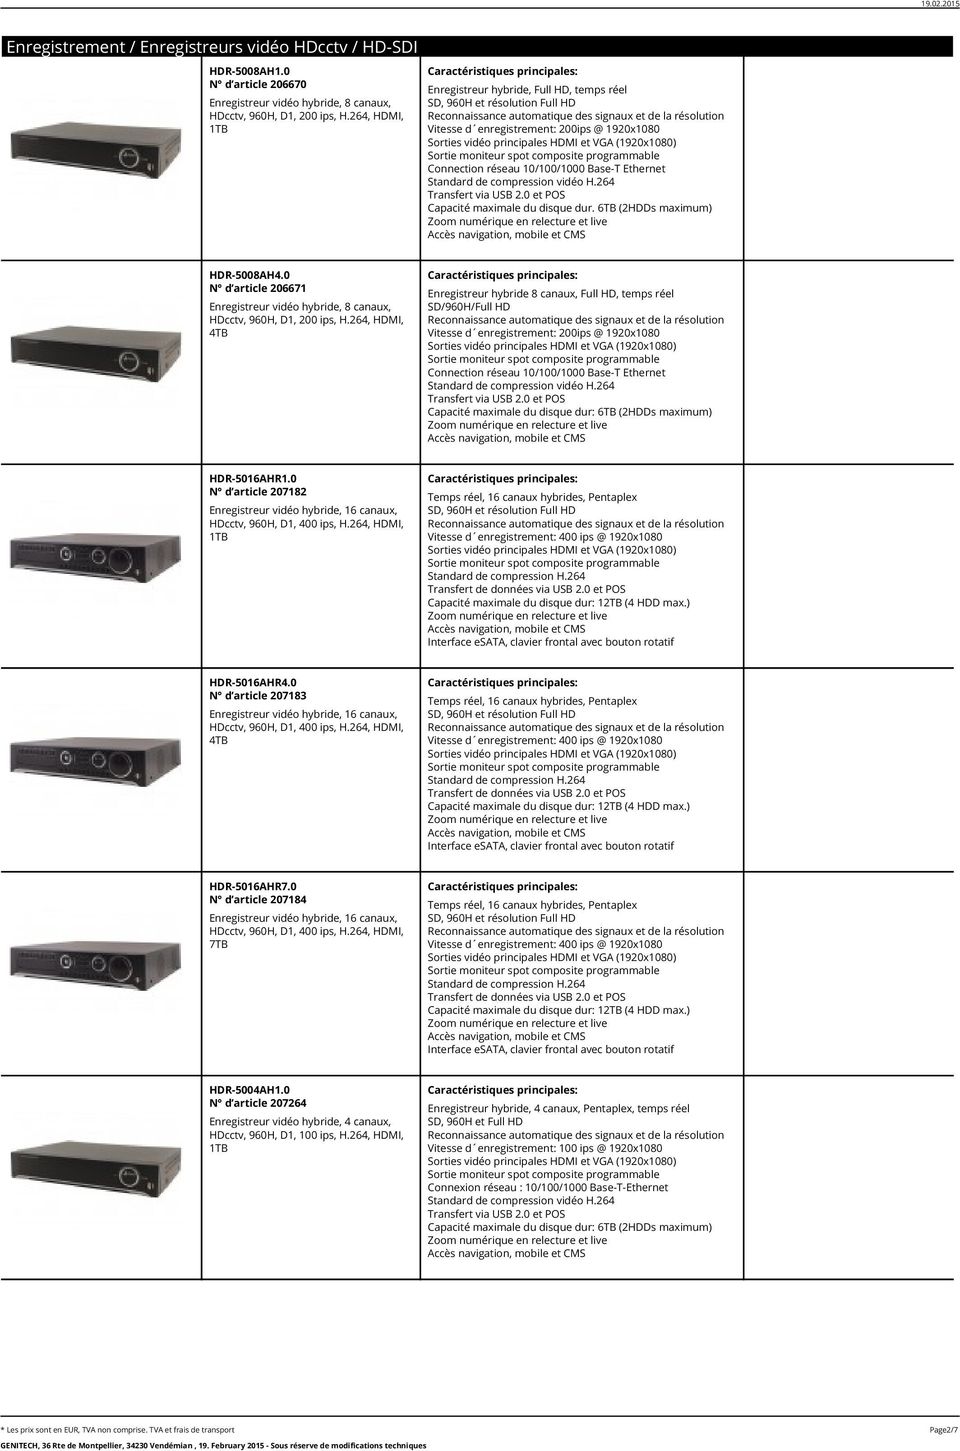 6TB (2HDDs maximum) HDR-5008AH4.0 N d article 206671 Enregistreur vidéo hybride, 8 canaux, HDcctv, 960H, D1, 200 ips, H.